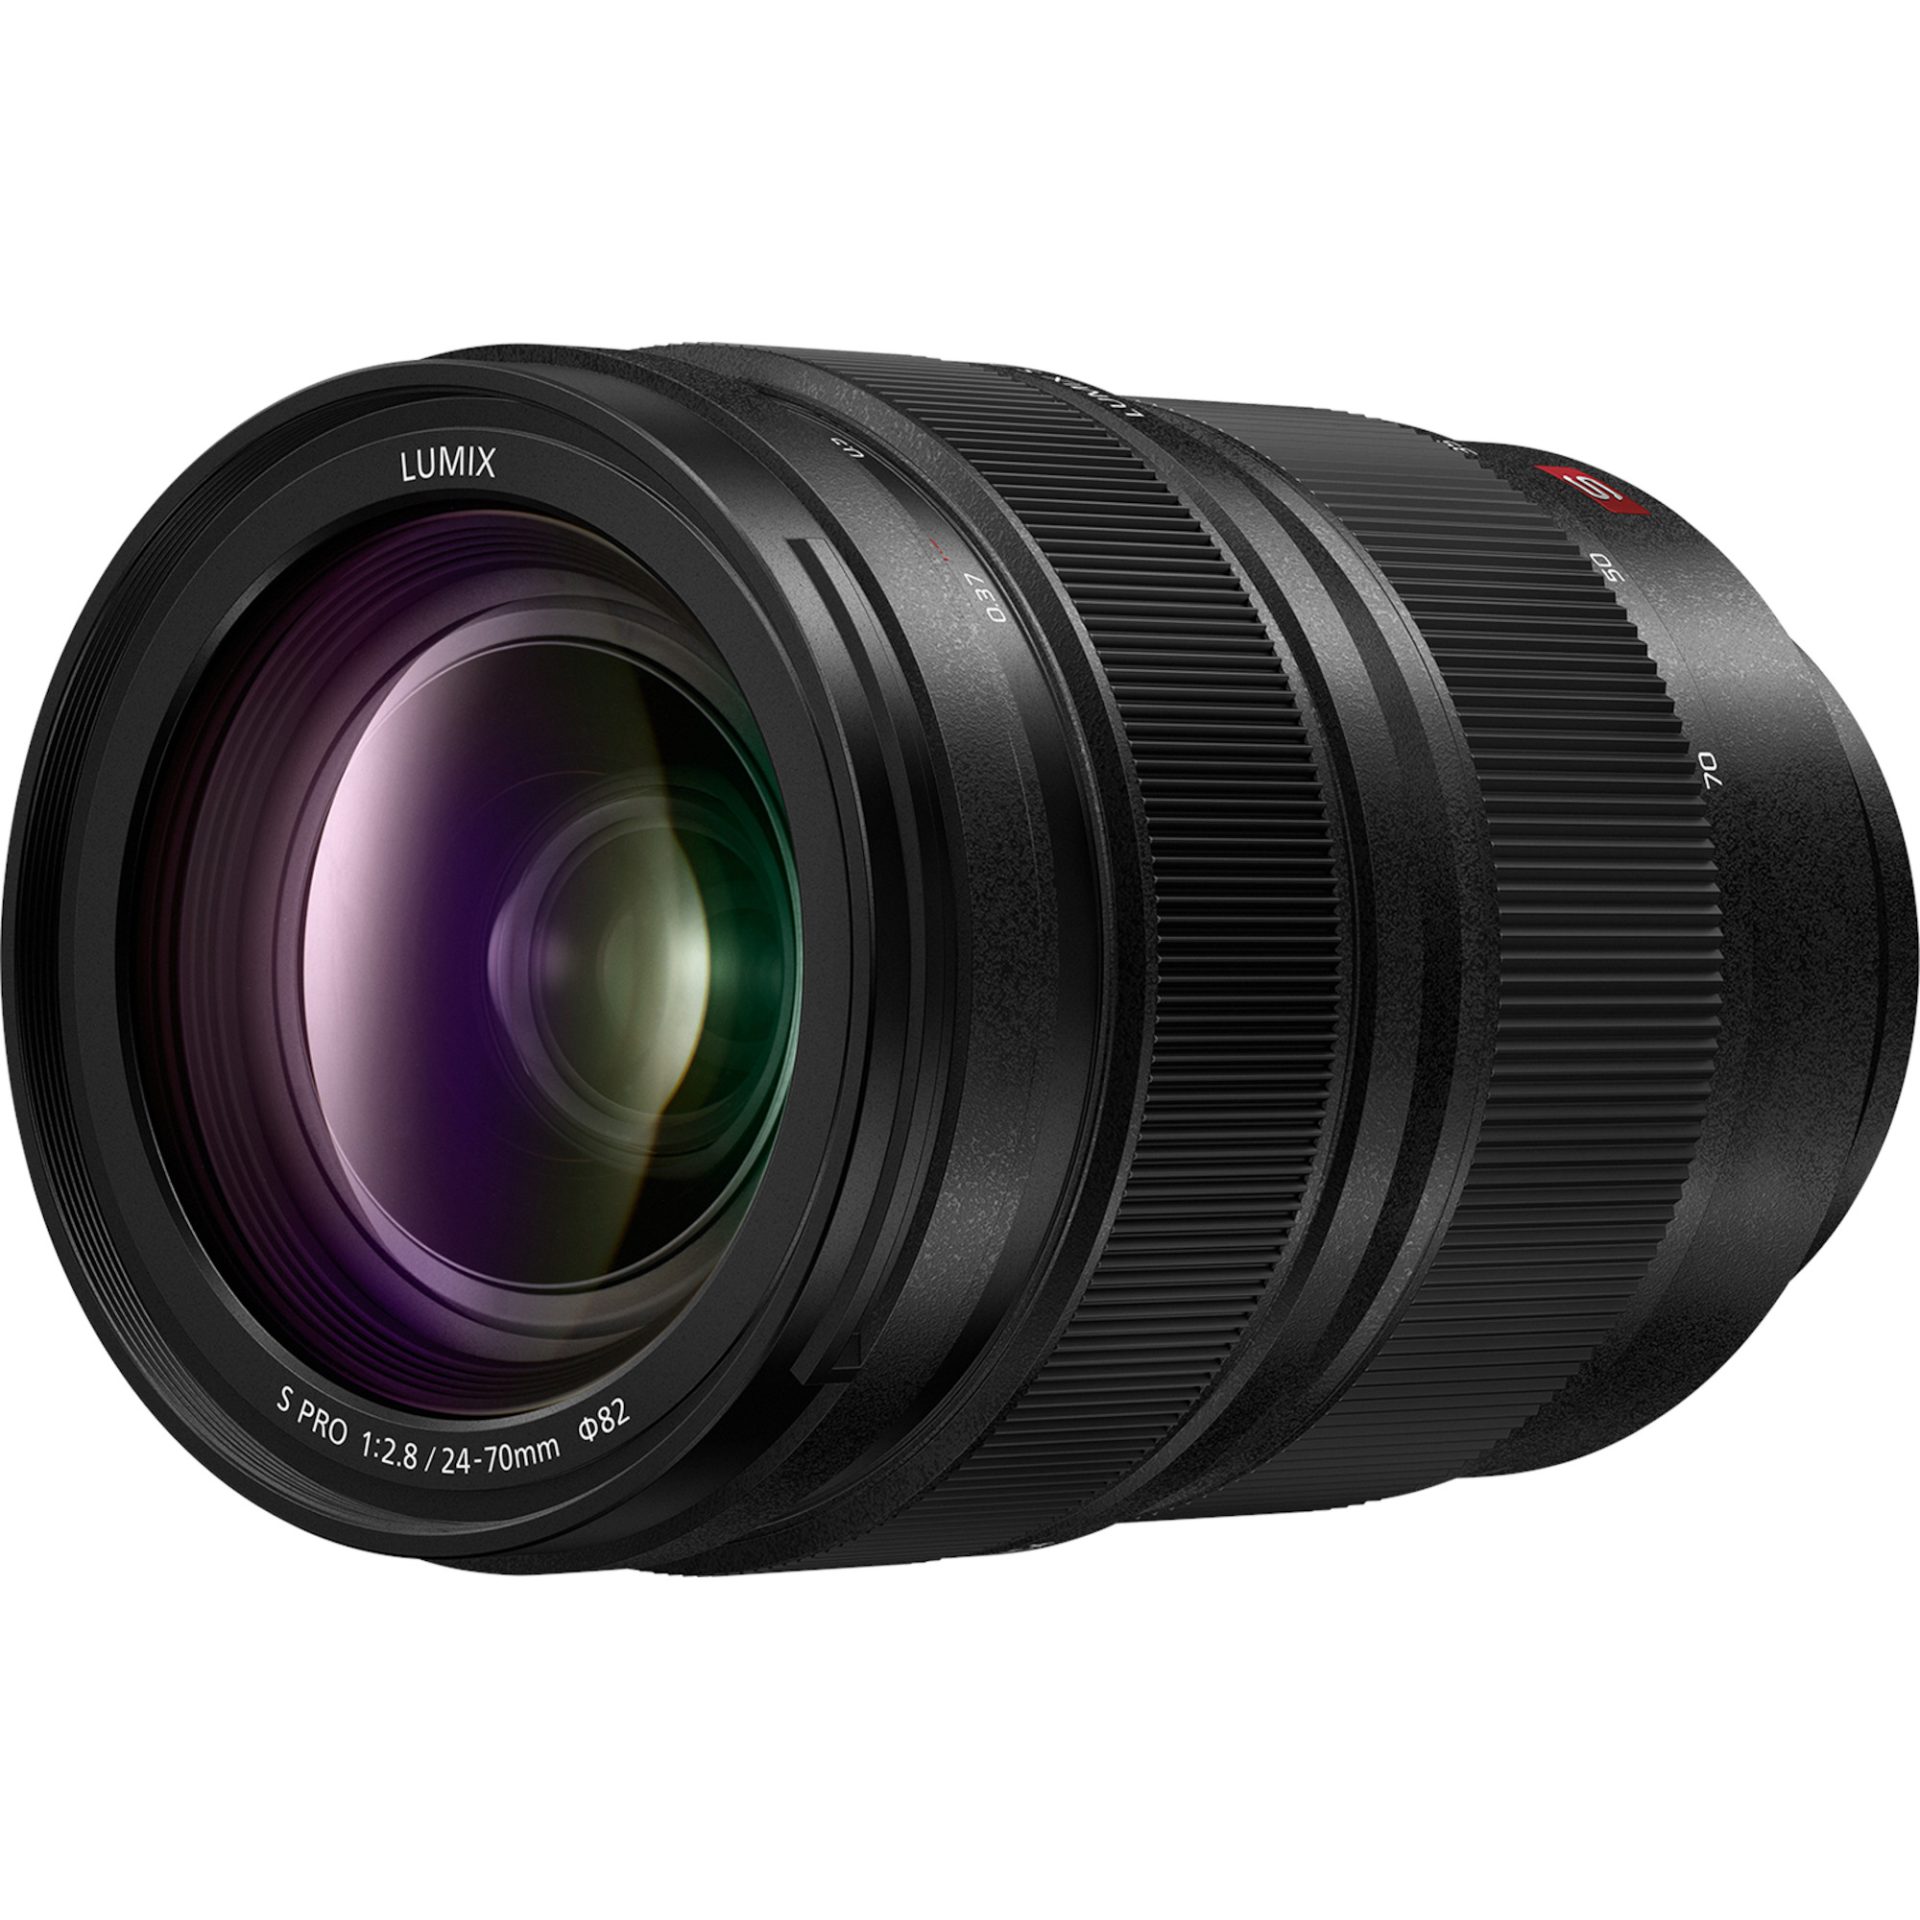 Panasonic S-E2470 LUMIX S PRO zoom teleobjektiv (24-70mm, F2.8, filtr φ82mm, full frame FF, zvětšení 0.25x, odolný proti stříkající vodě), černý